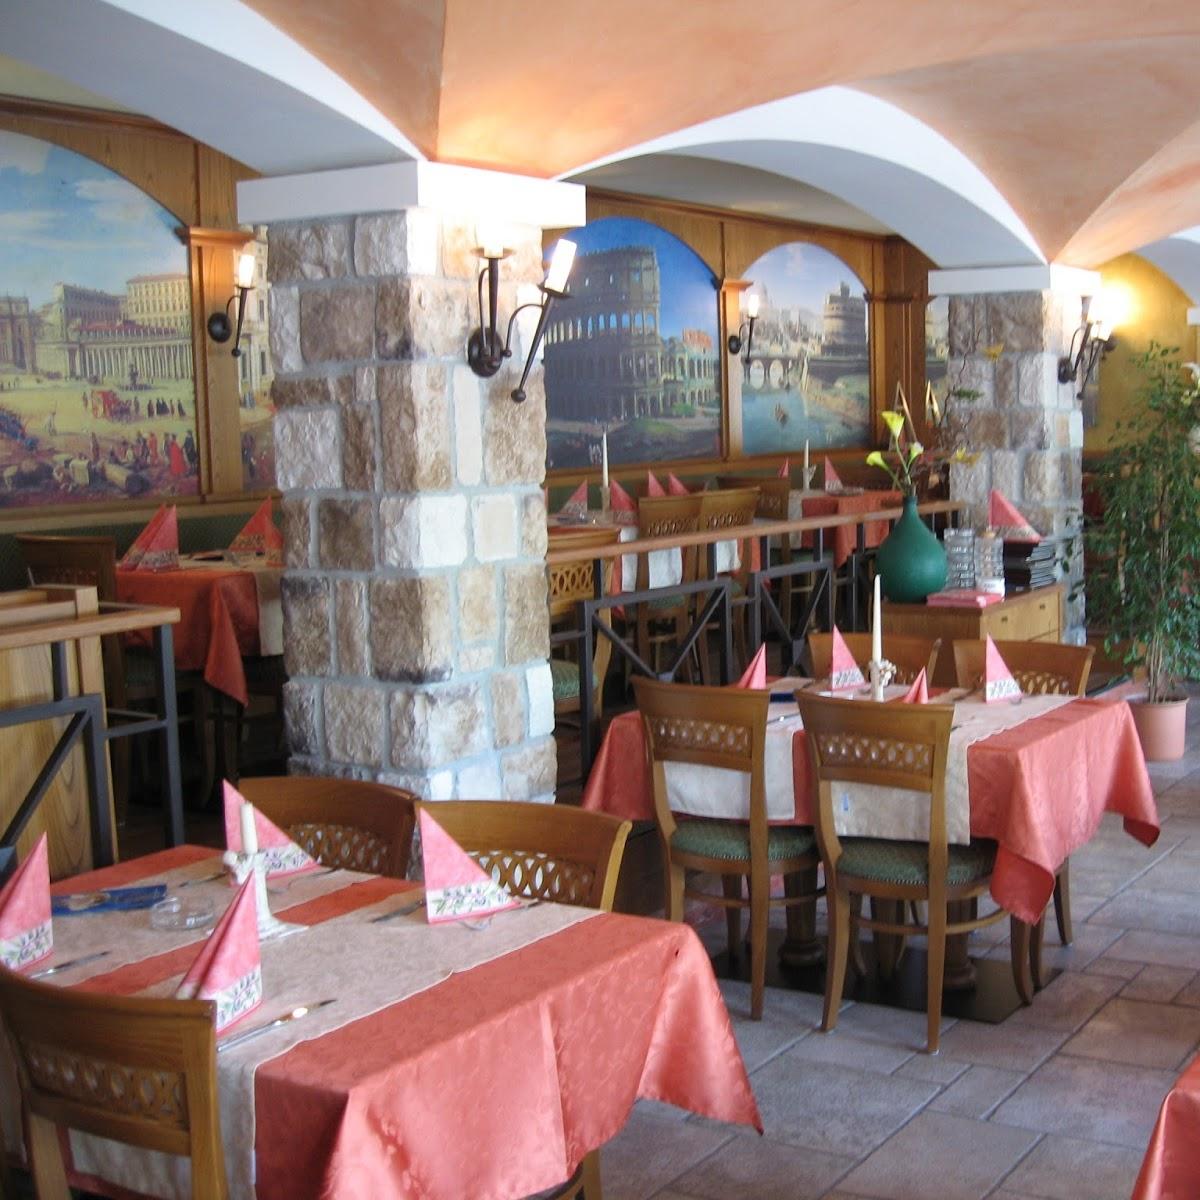 Restaurant "Pizzeria Roma" in Bad Berleburg